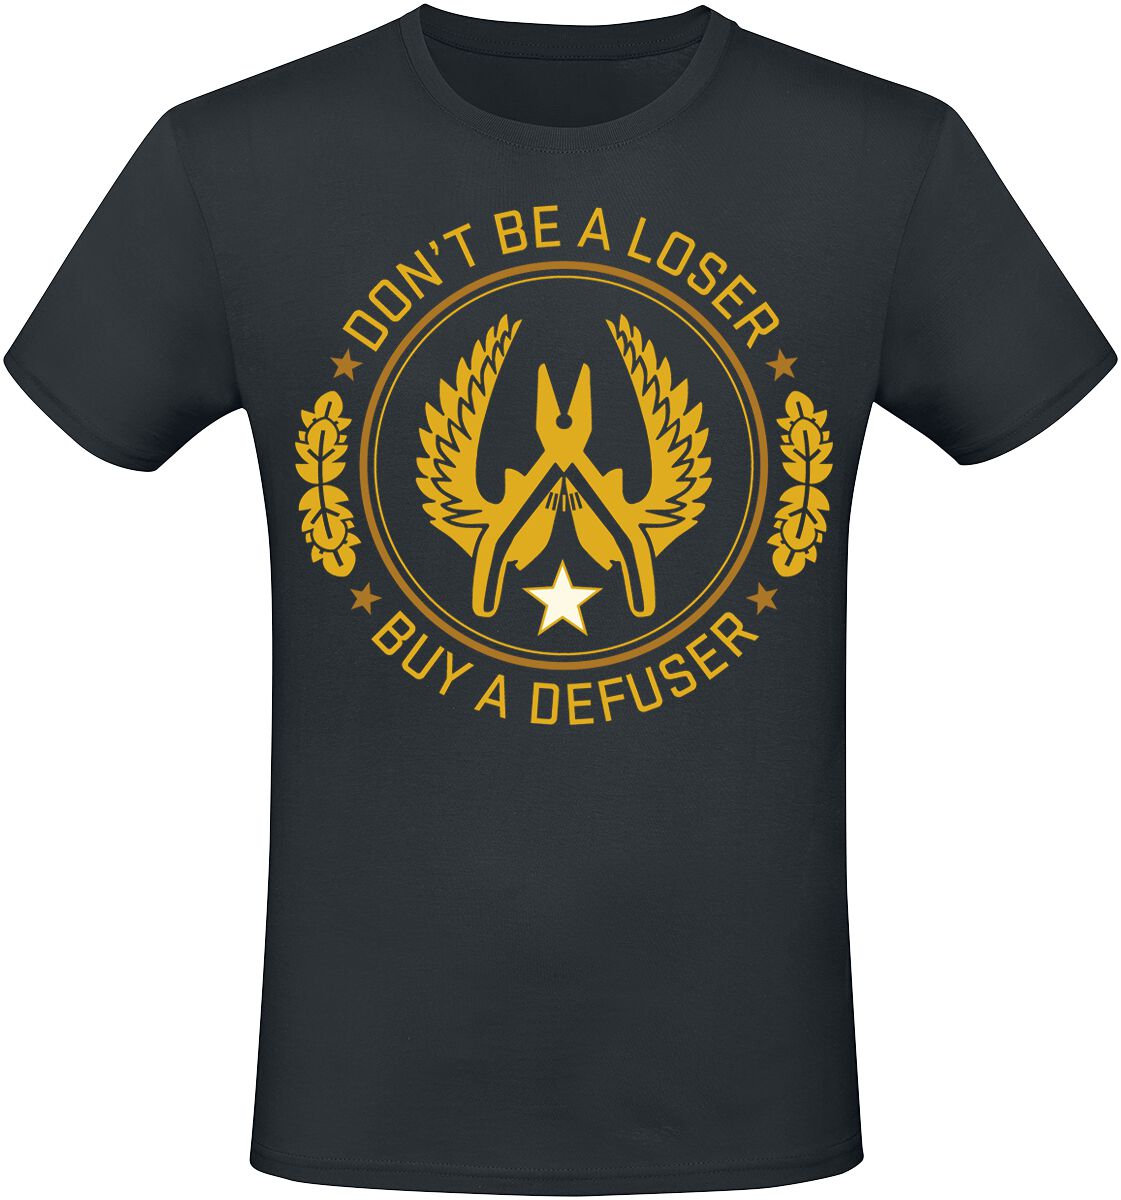 Counter-Strike - Gaming T-Shirt - 2 - Defuser - S bis XXL - für Männer - Größe M - schwarz  - EMP exklusives Merchandise!